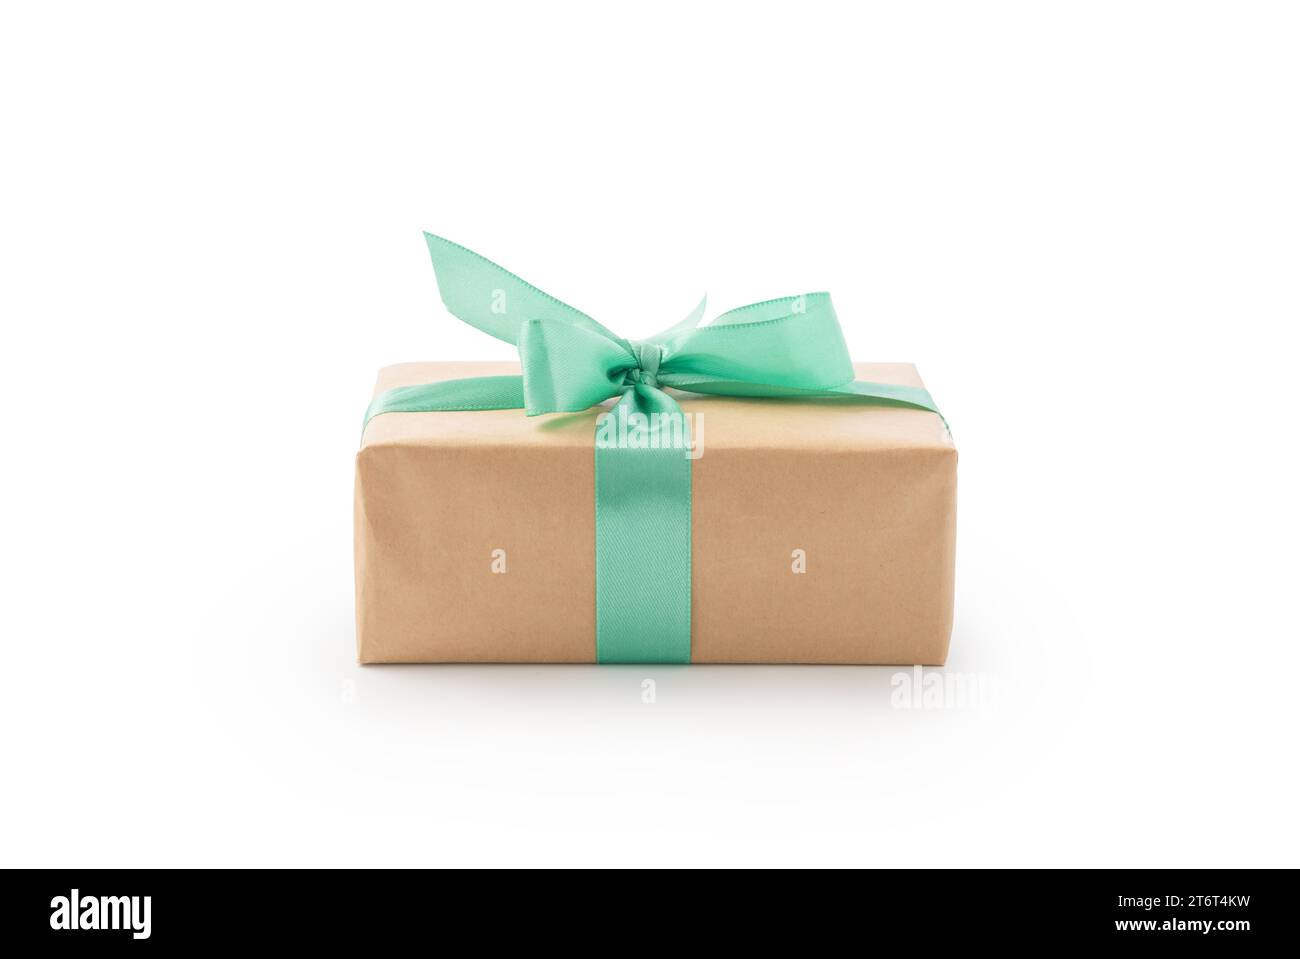 Confezione regalo in carta marrone con nastro verde isolato su sfondo bianco Foto Stock